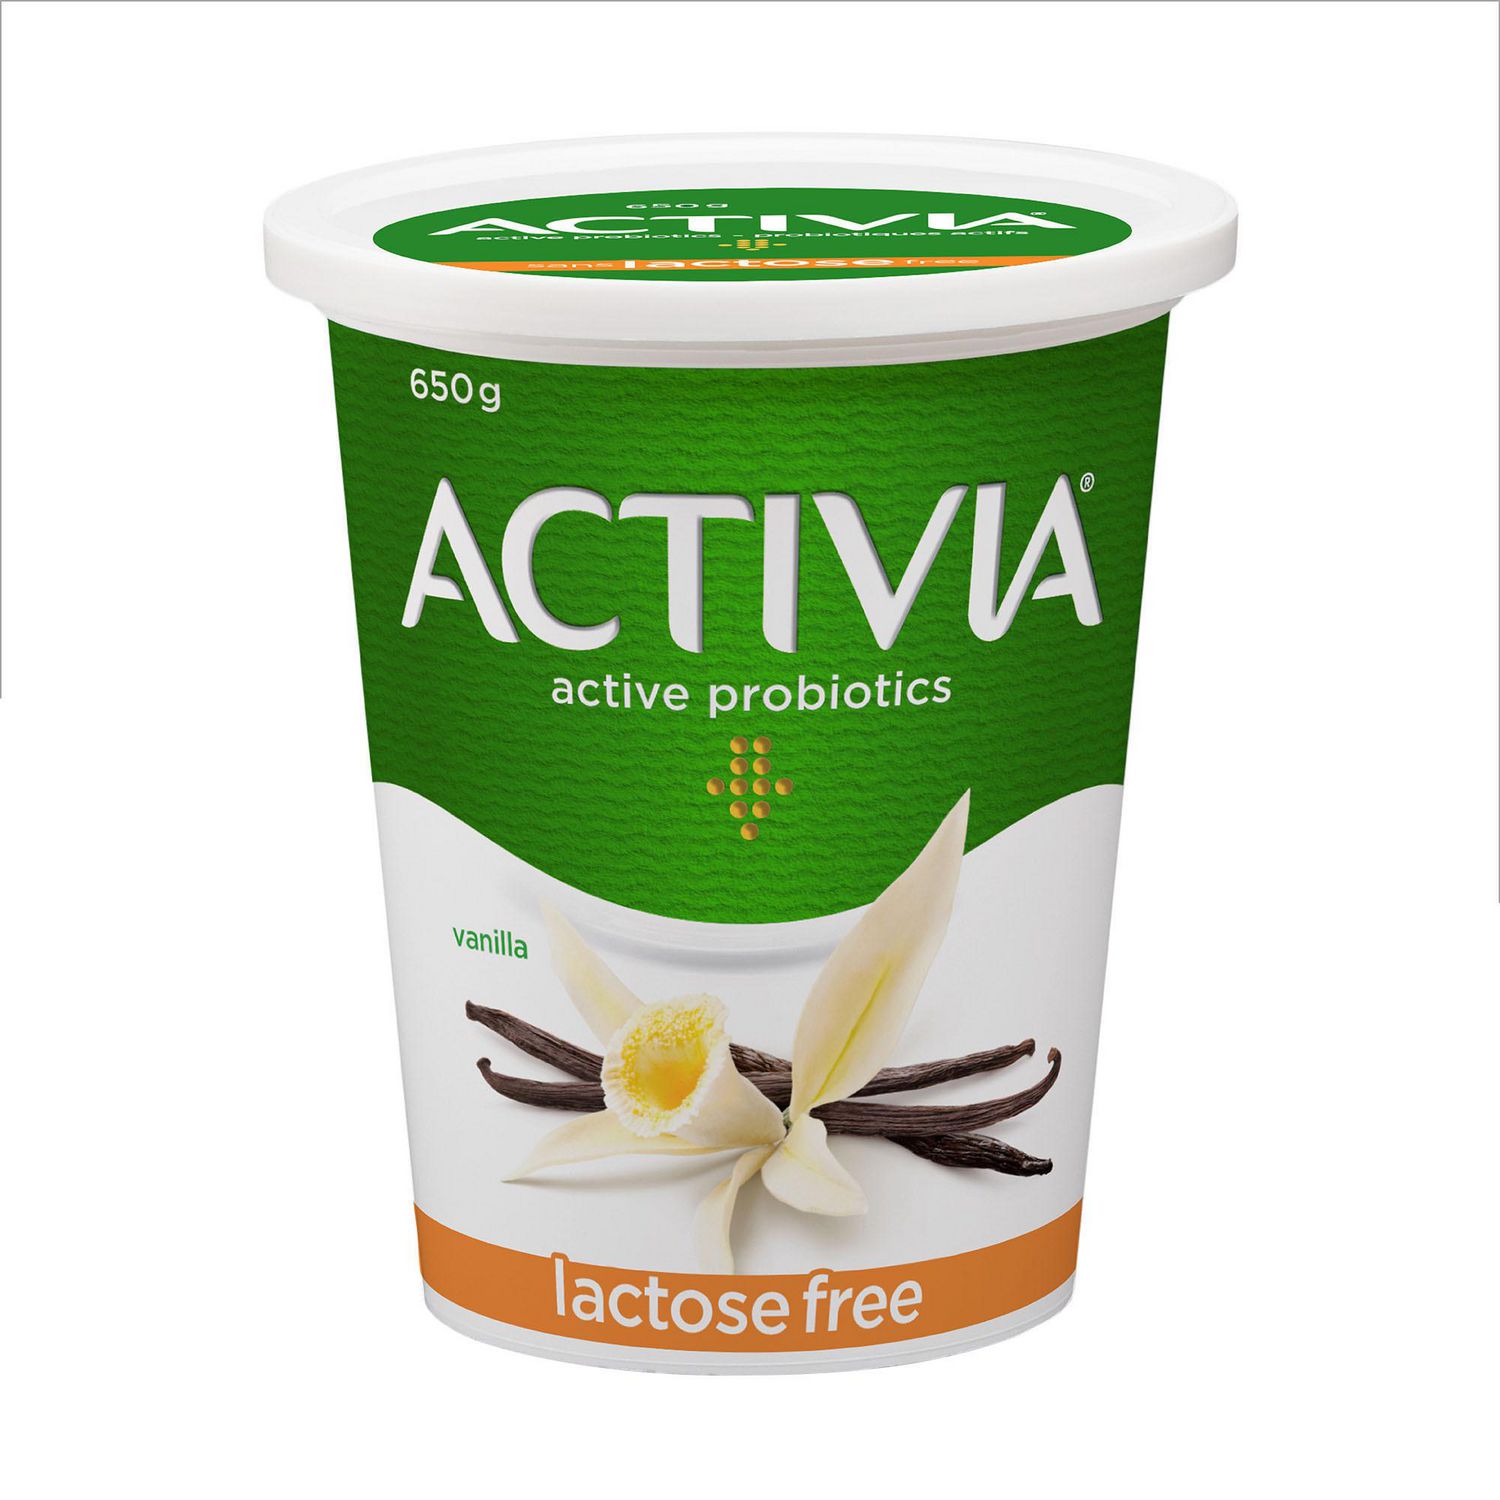 Activia Yogurt With Probiotics Lactose Free Vanilla Flavour 650g Walmart Canada 9185